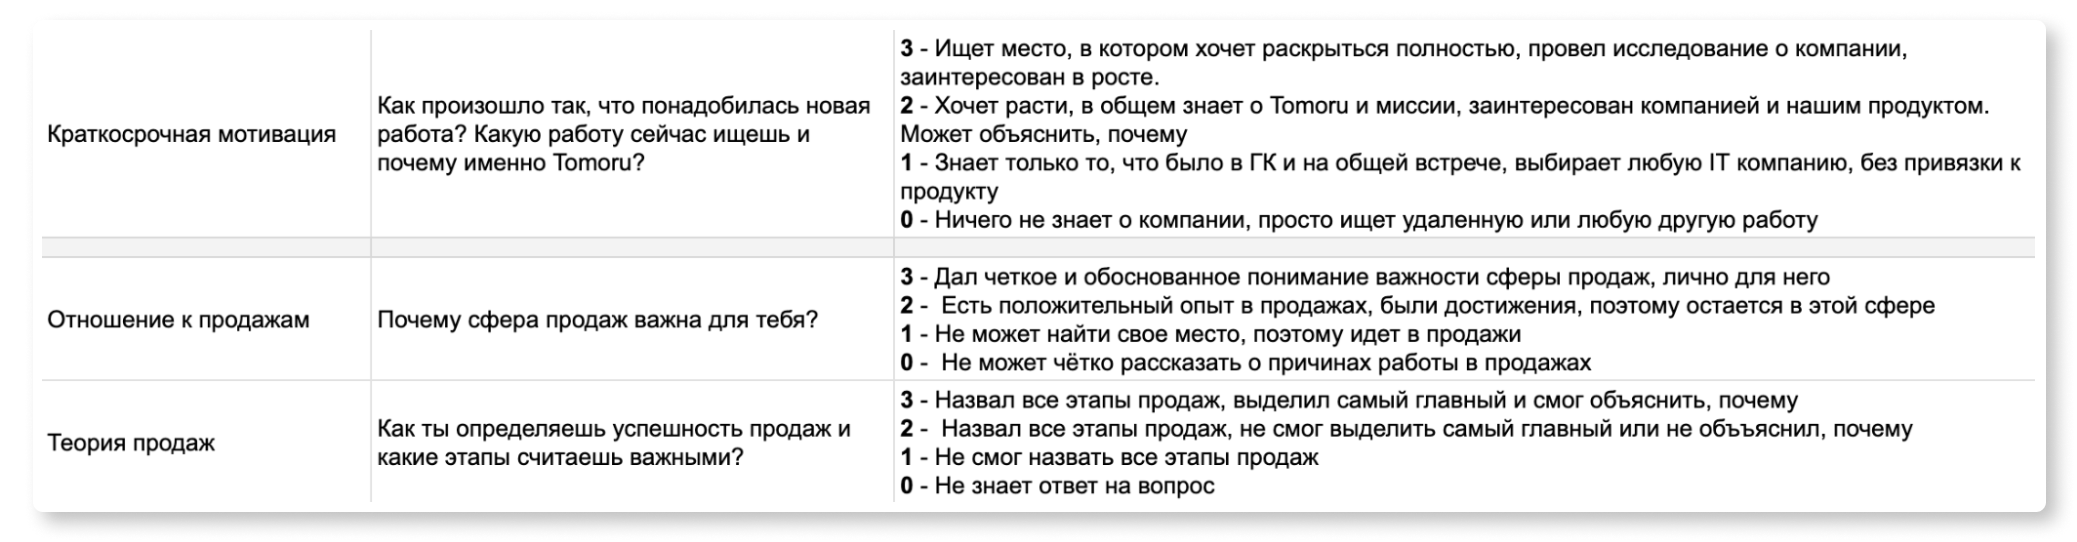 Скриншот таблицы с вопросами для собеседования, рядом с каждым вопросом — пояснение, как оценивать ответ